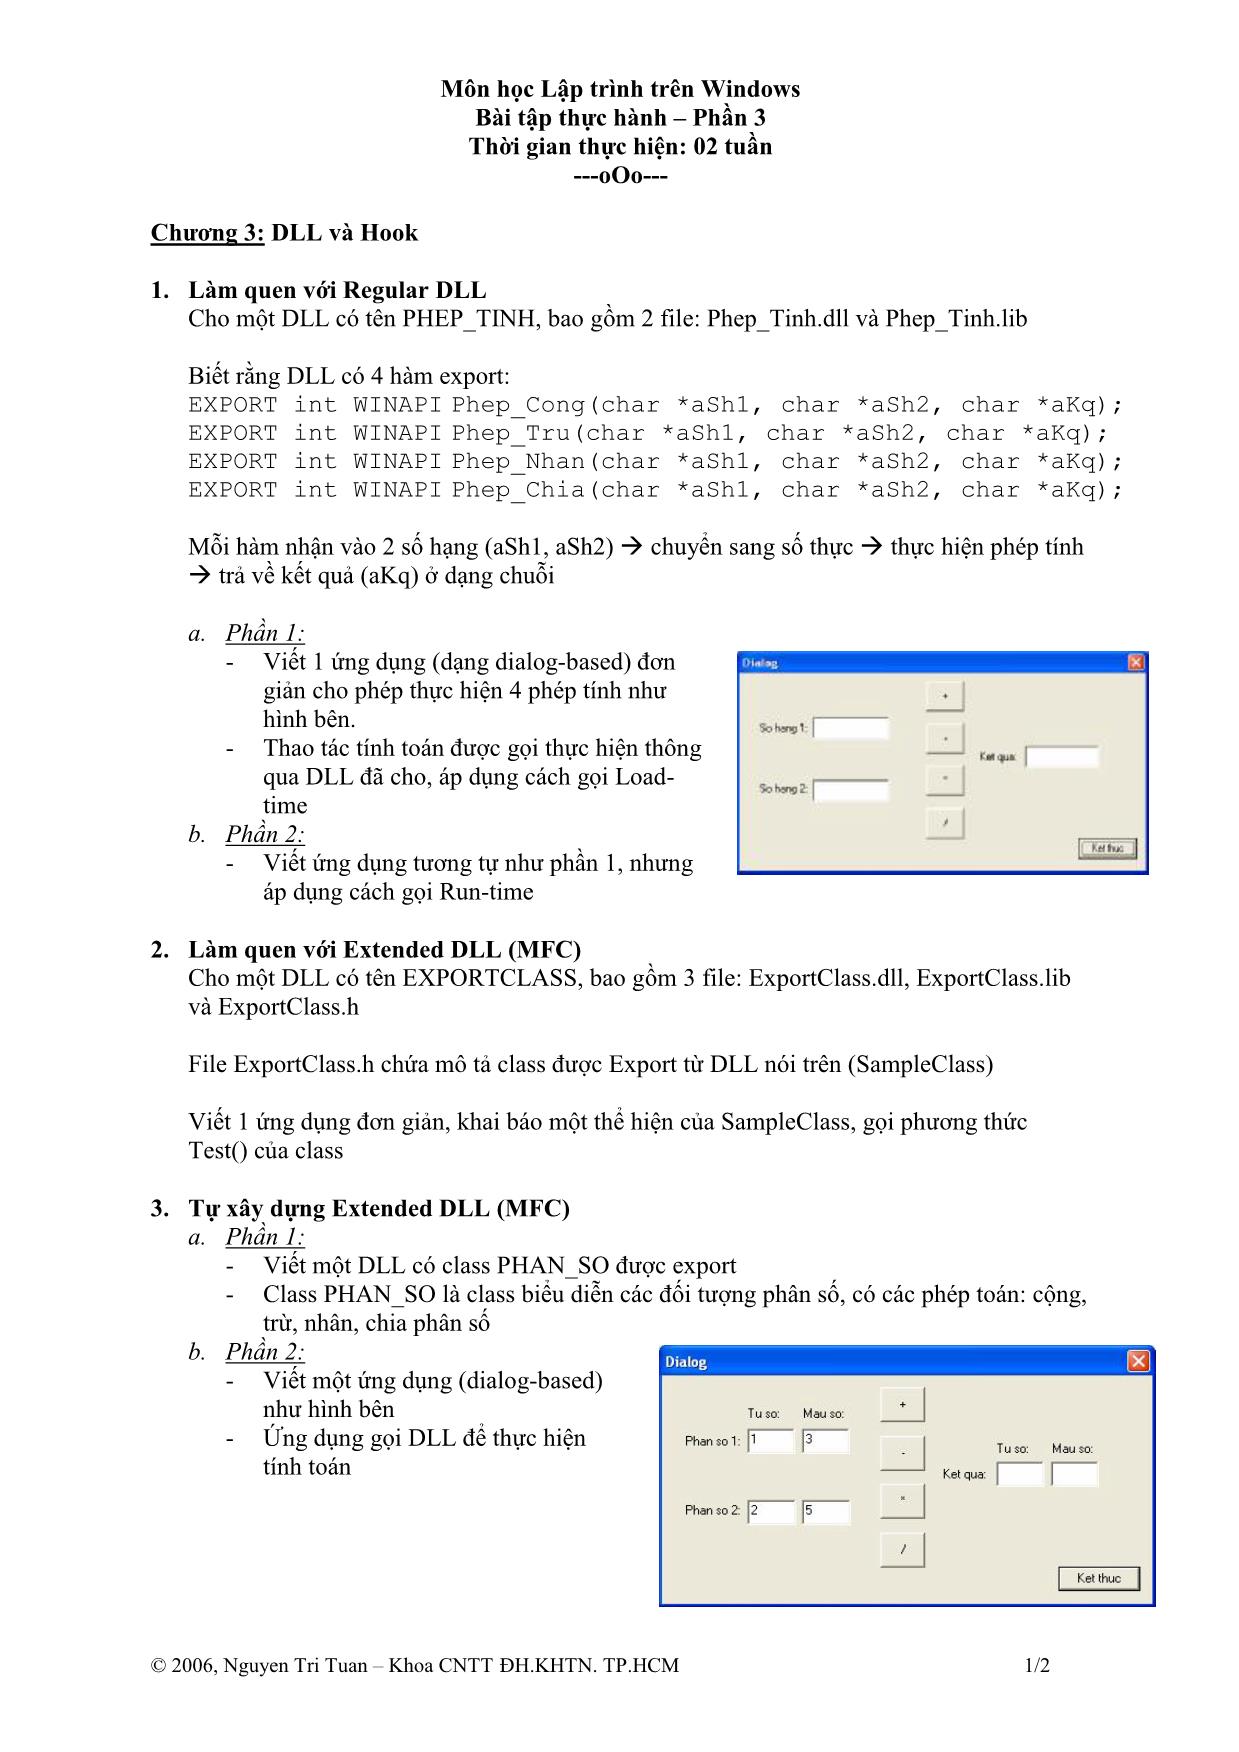 Bài tập thực hành môn Lập trình trên Windows trang 5